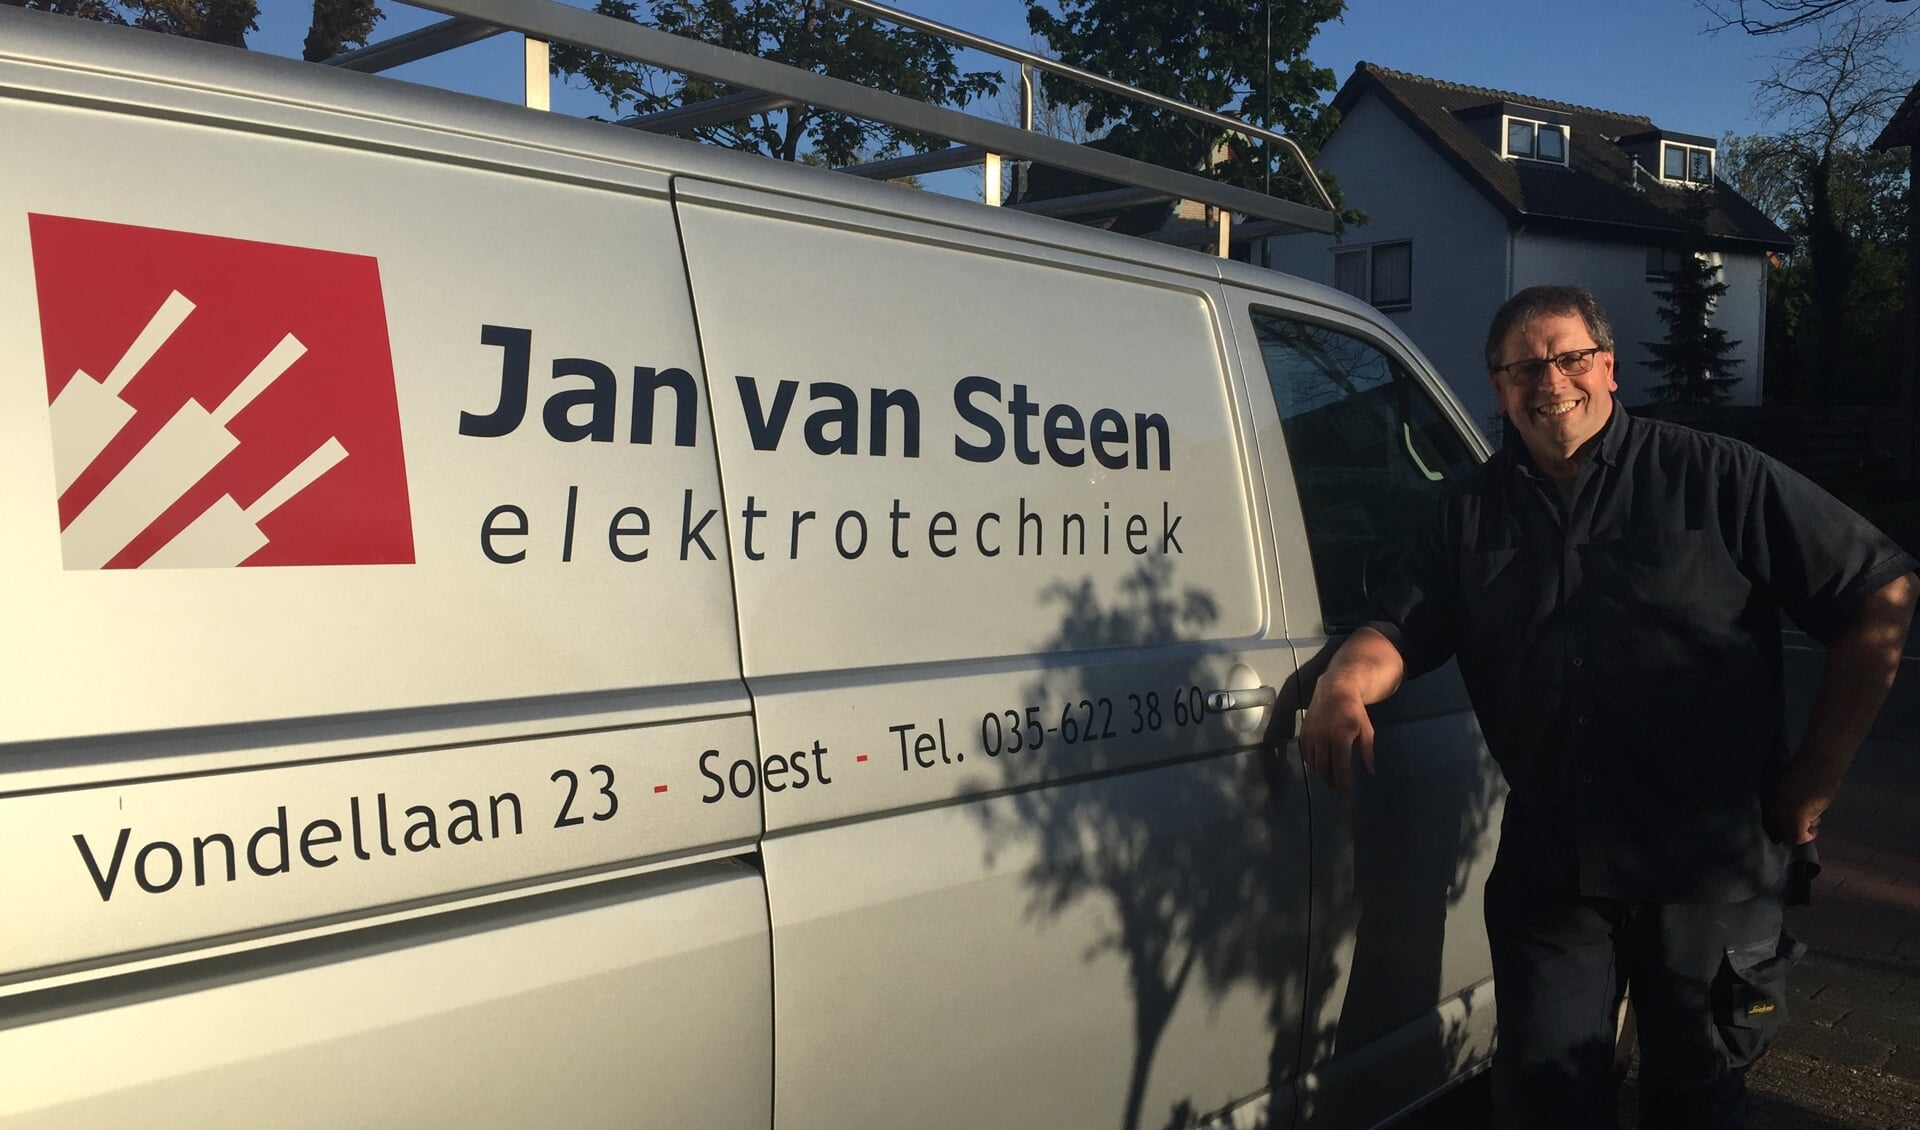 Jan van Steen bij zijn bus